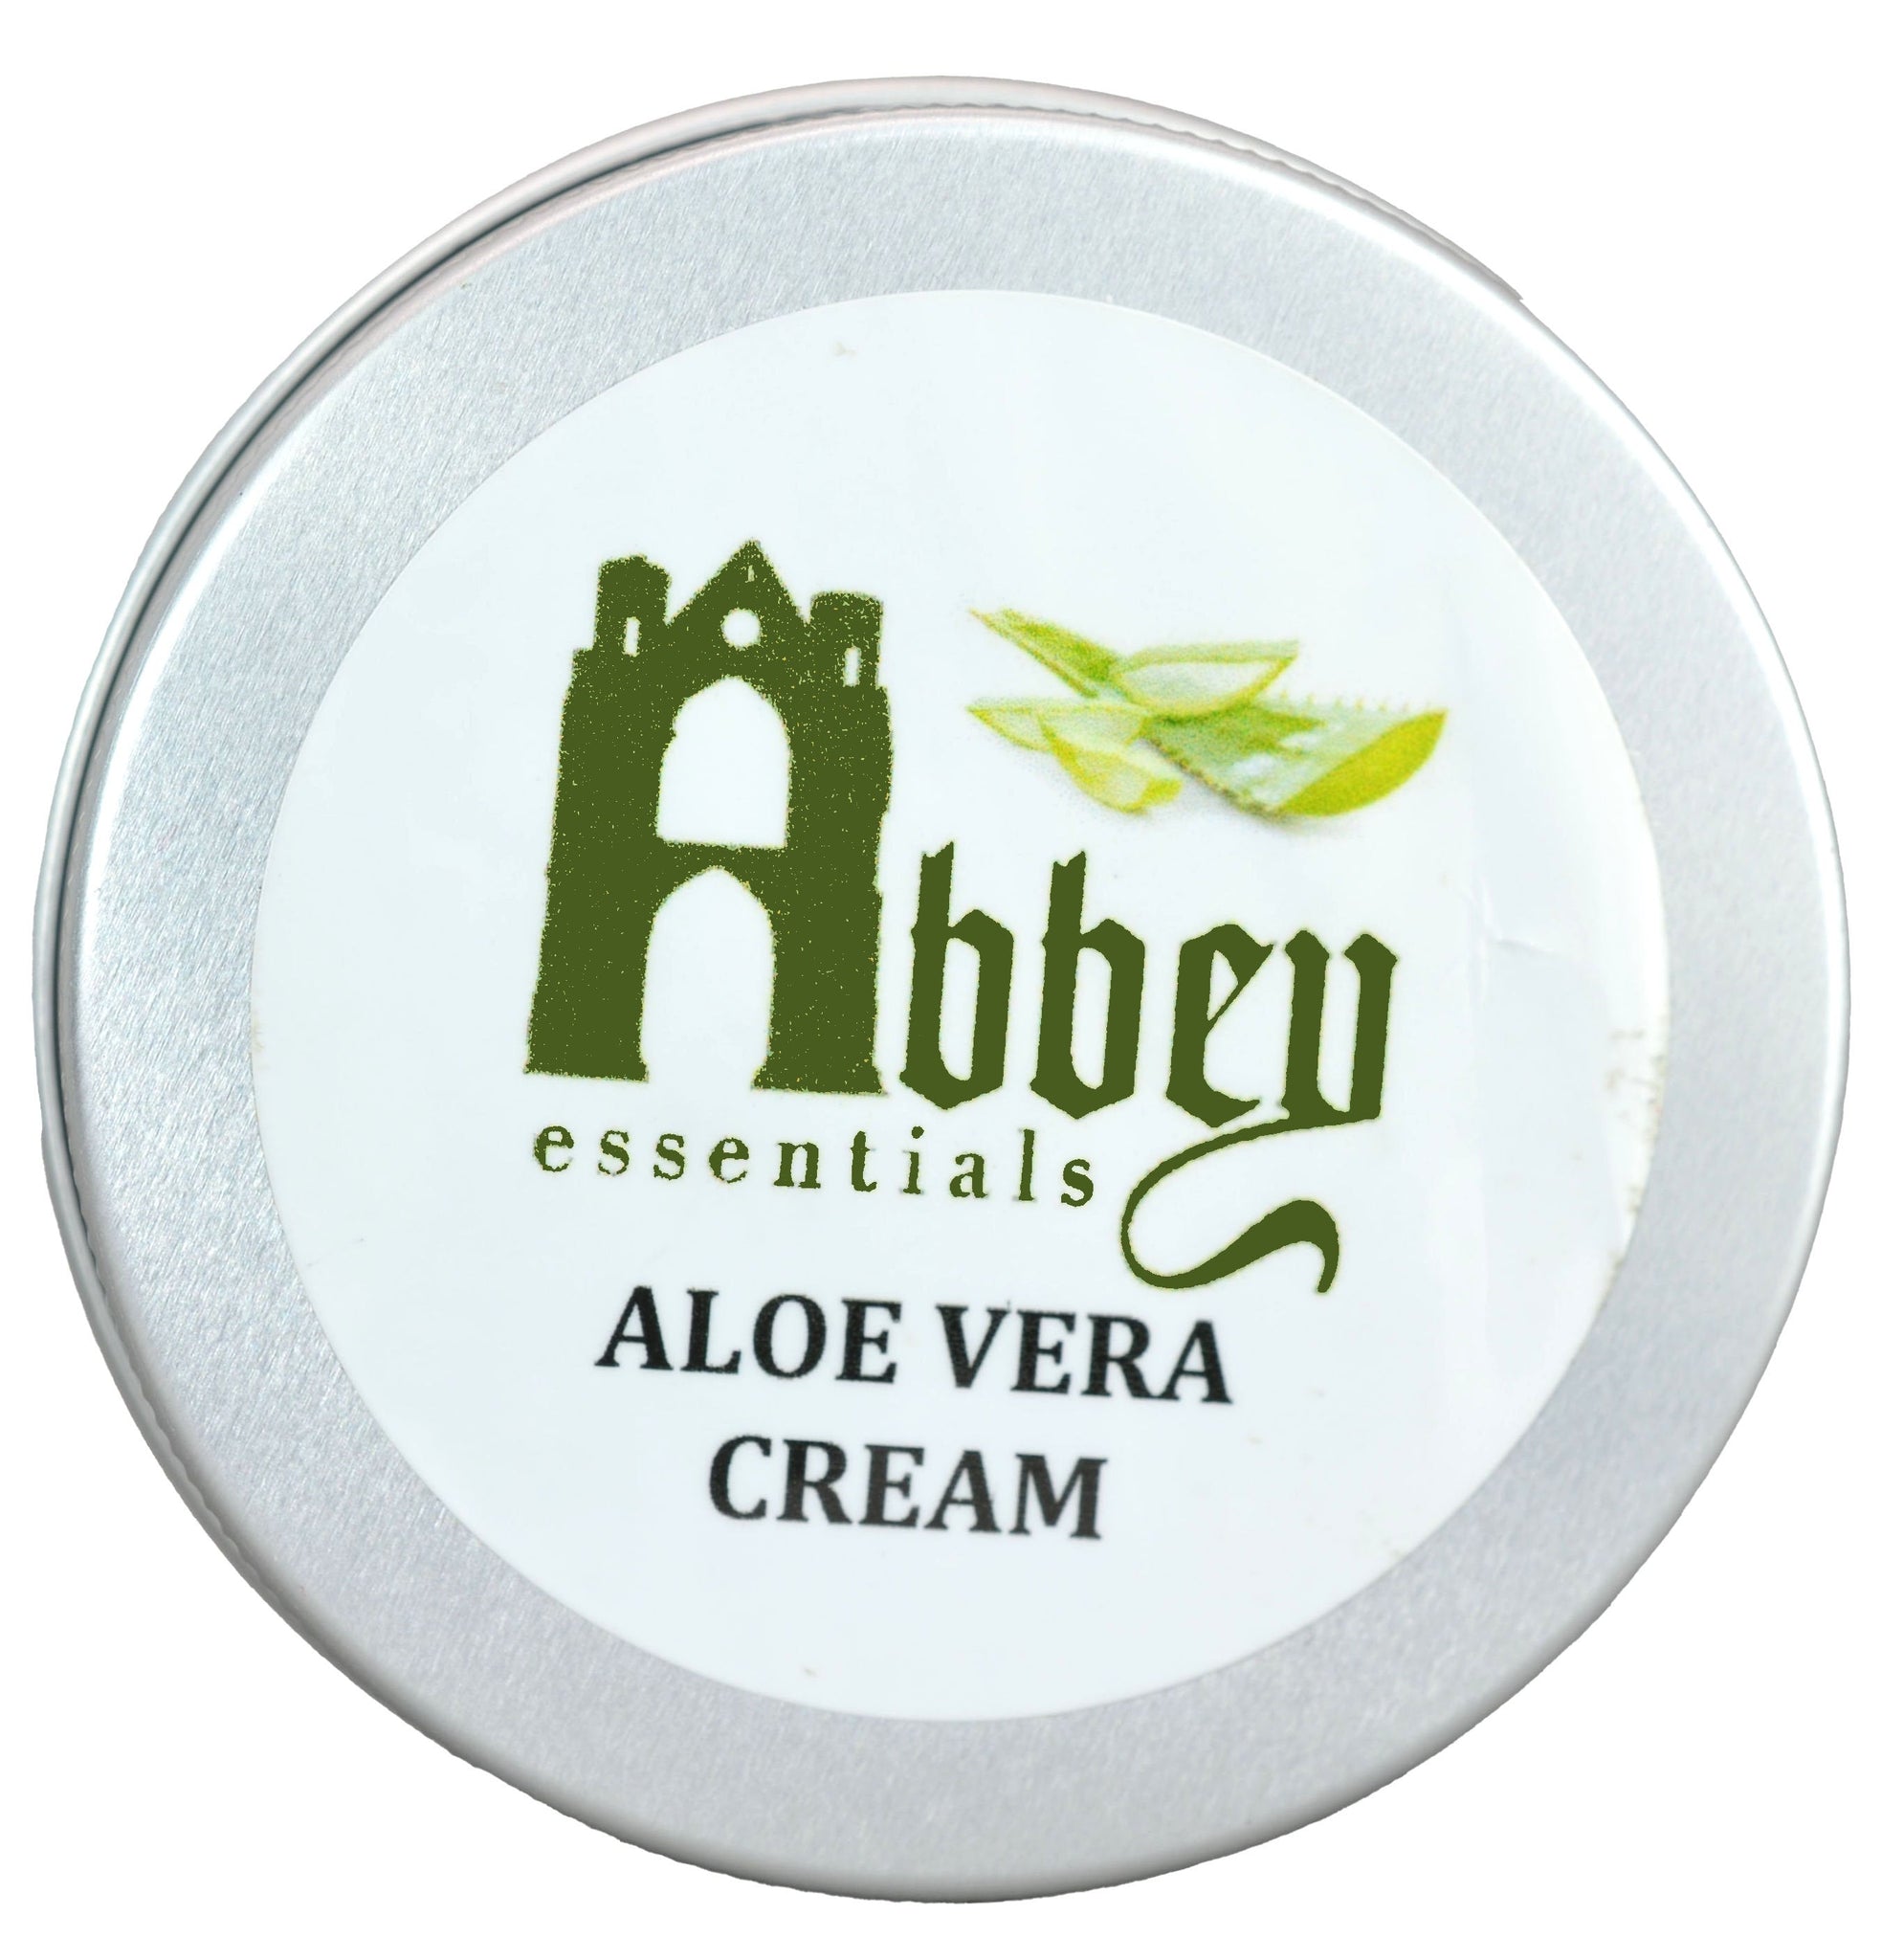 Aloe Vera Cream 50ml - Abbey Essentials